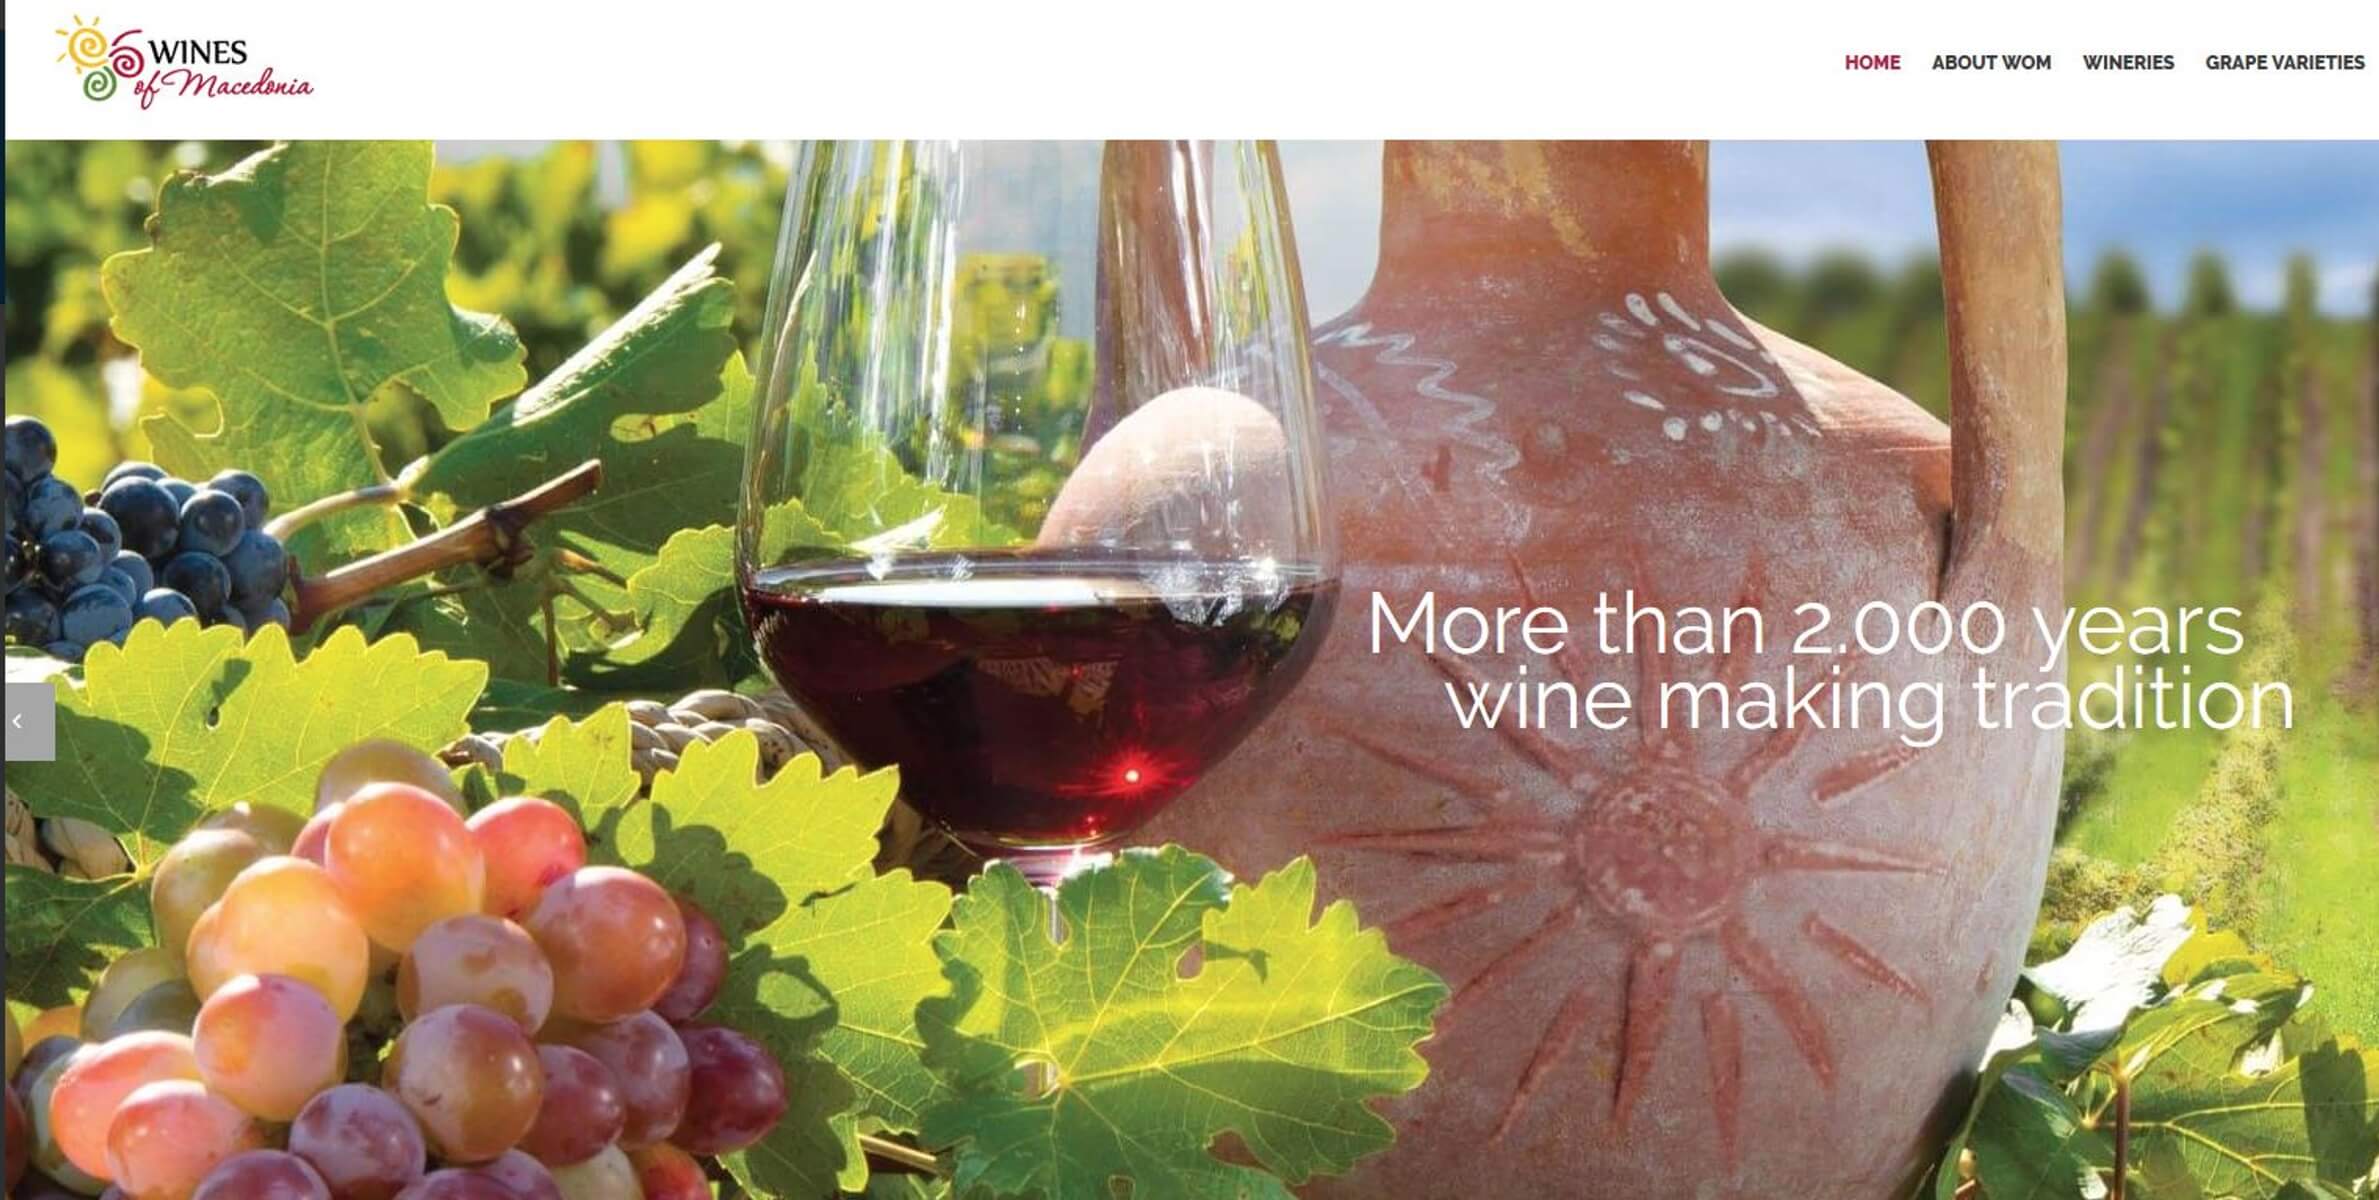 Στην υγεία των κορόιδων! Τώρα, πουλάνε “Μακεδονικό κρασί” 2.000 ετών!